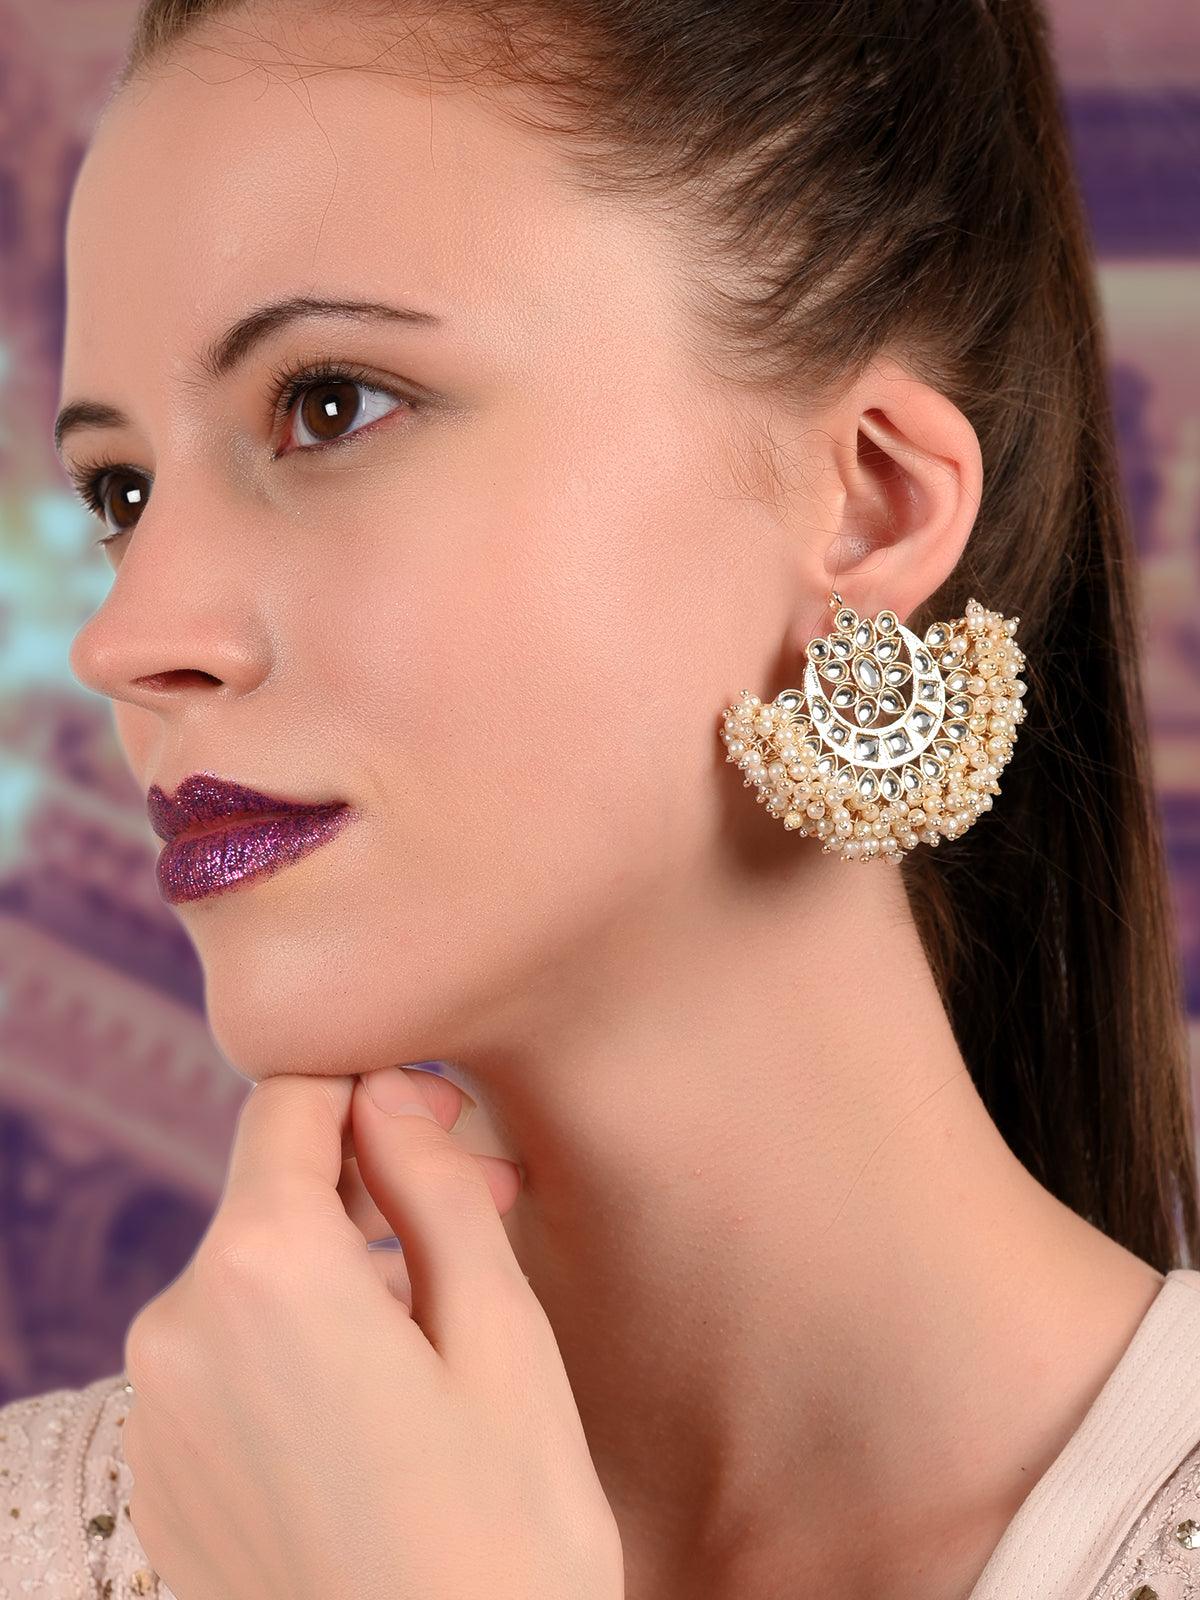 Women's Mesmerisng Half-Moon Pearl And Kundan Earrings! - Odette